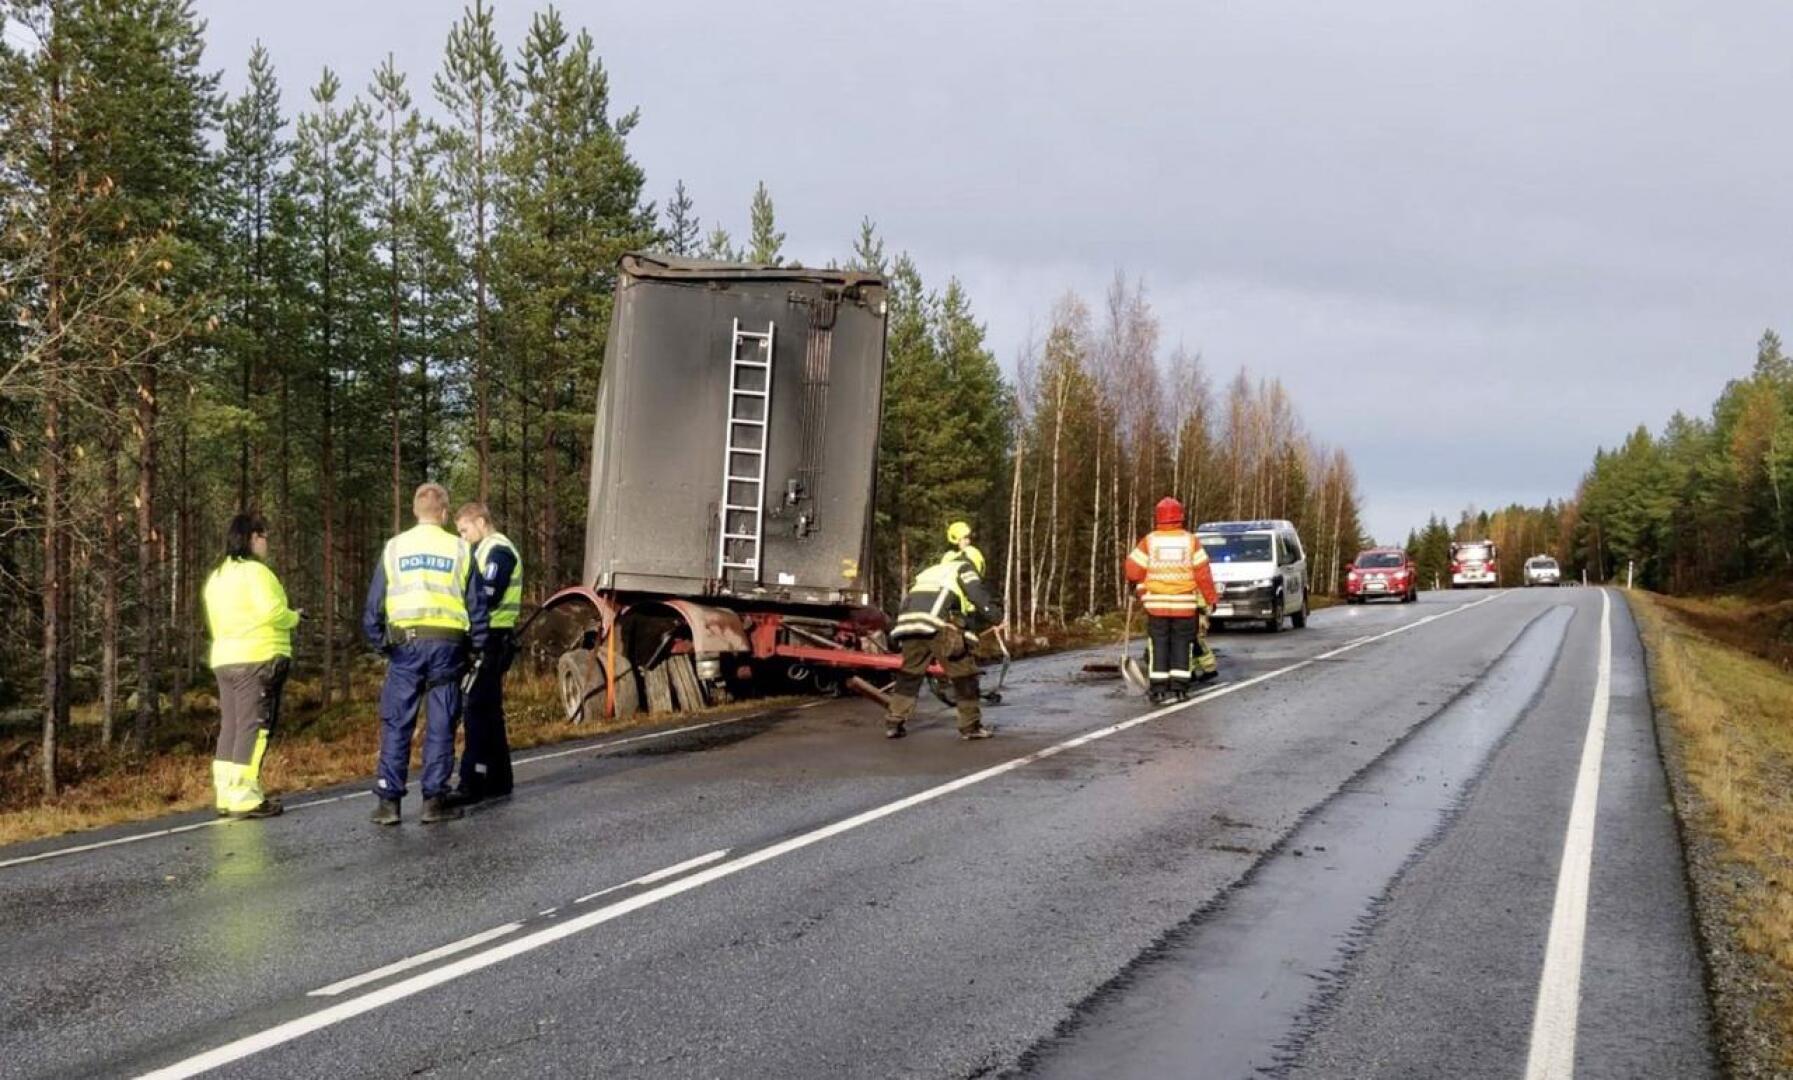 Rekka suistui ojaan liukkaalla tiellä Pedersöressä, Lappforsin kylän läheisyydessä.